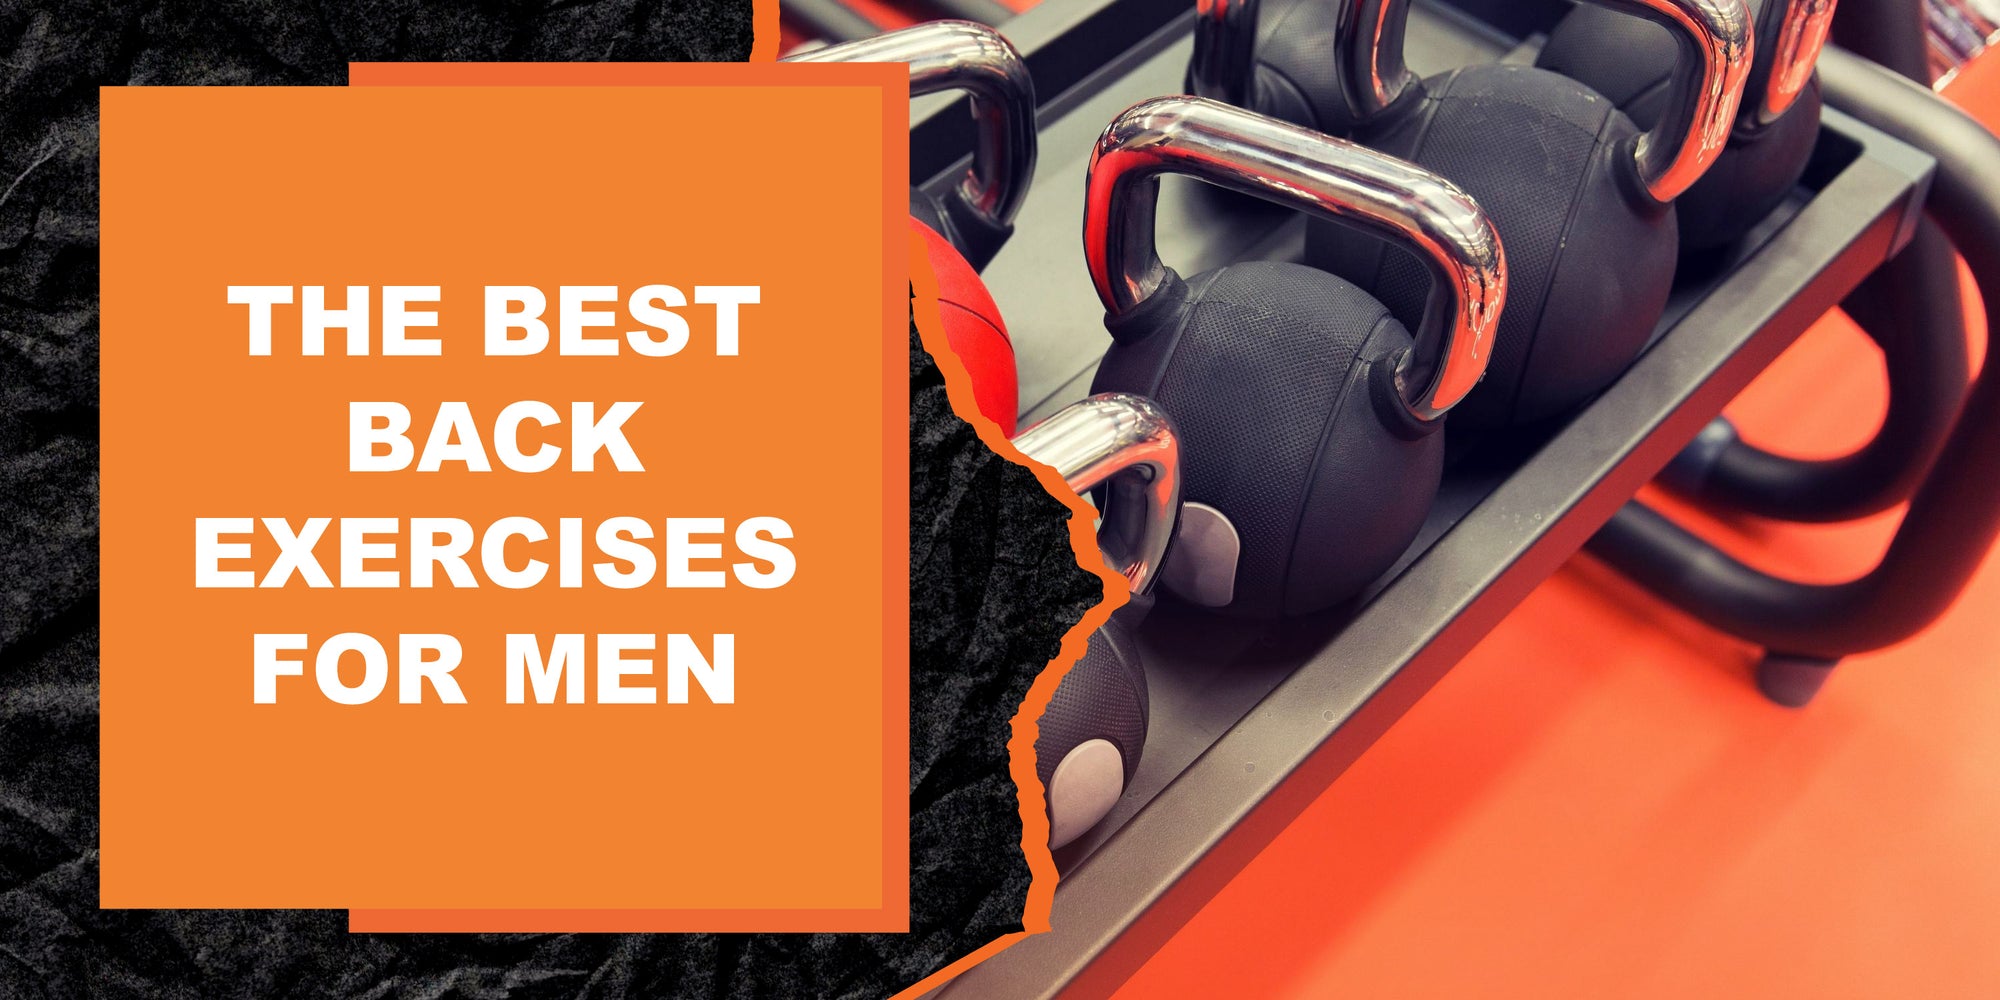 The Best Back Exercises for Men